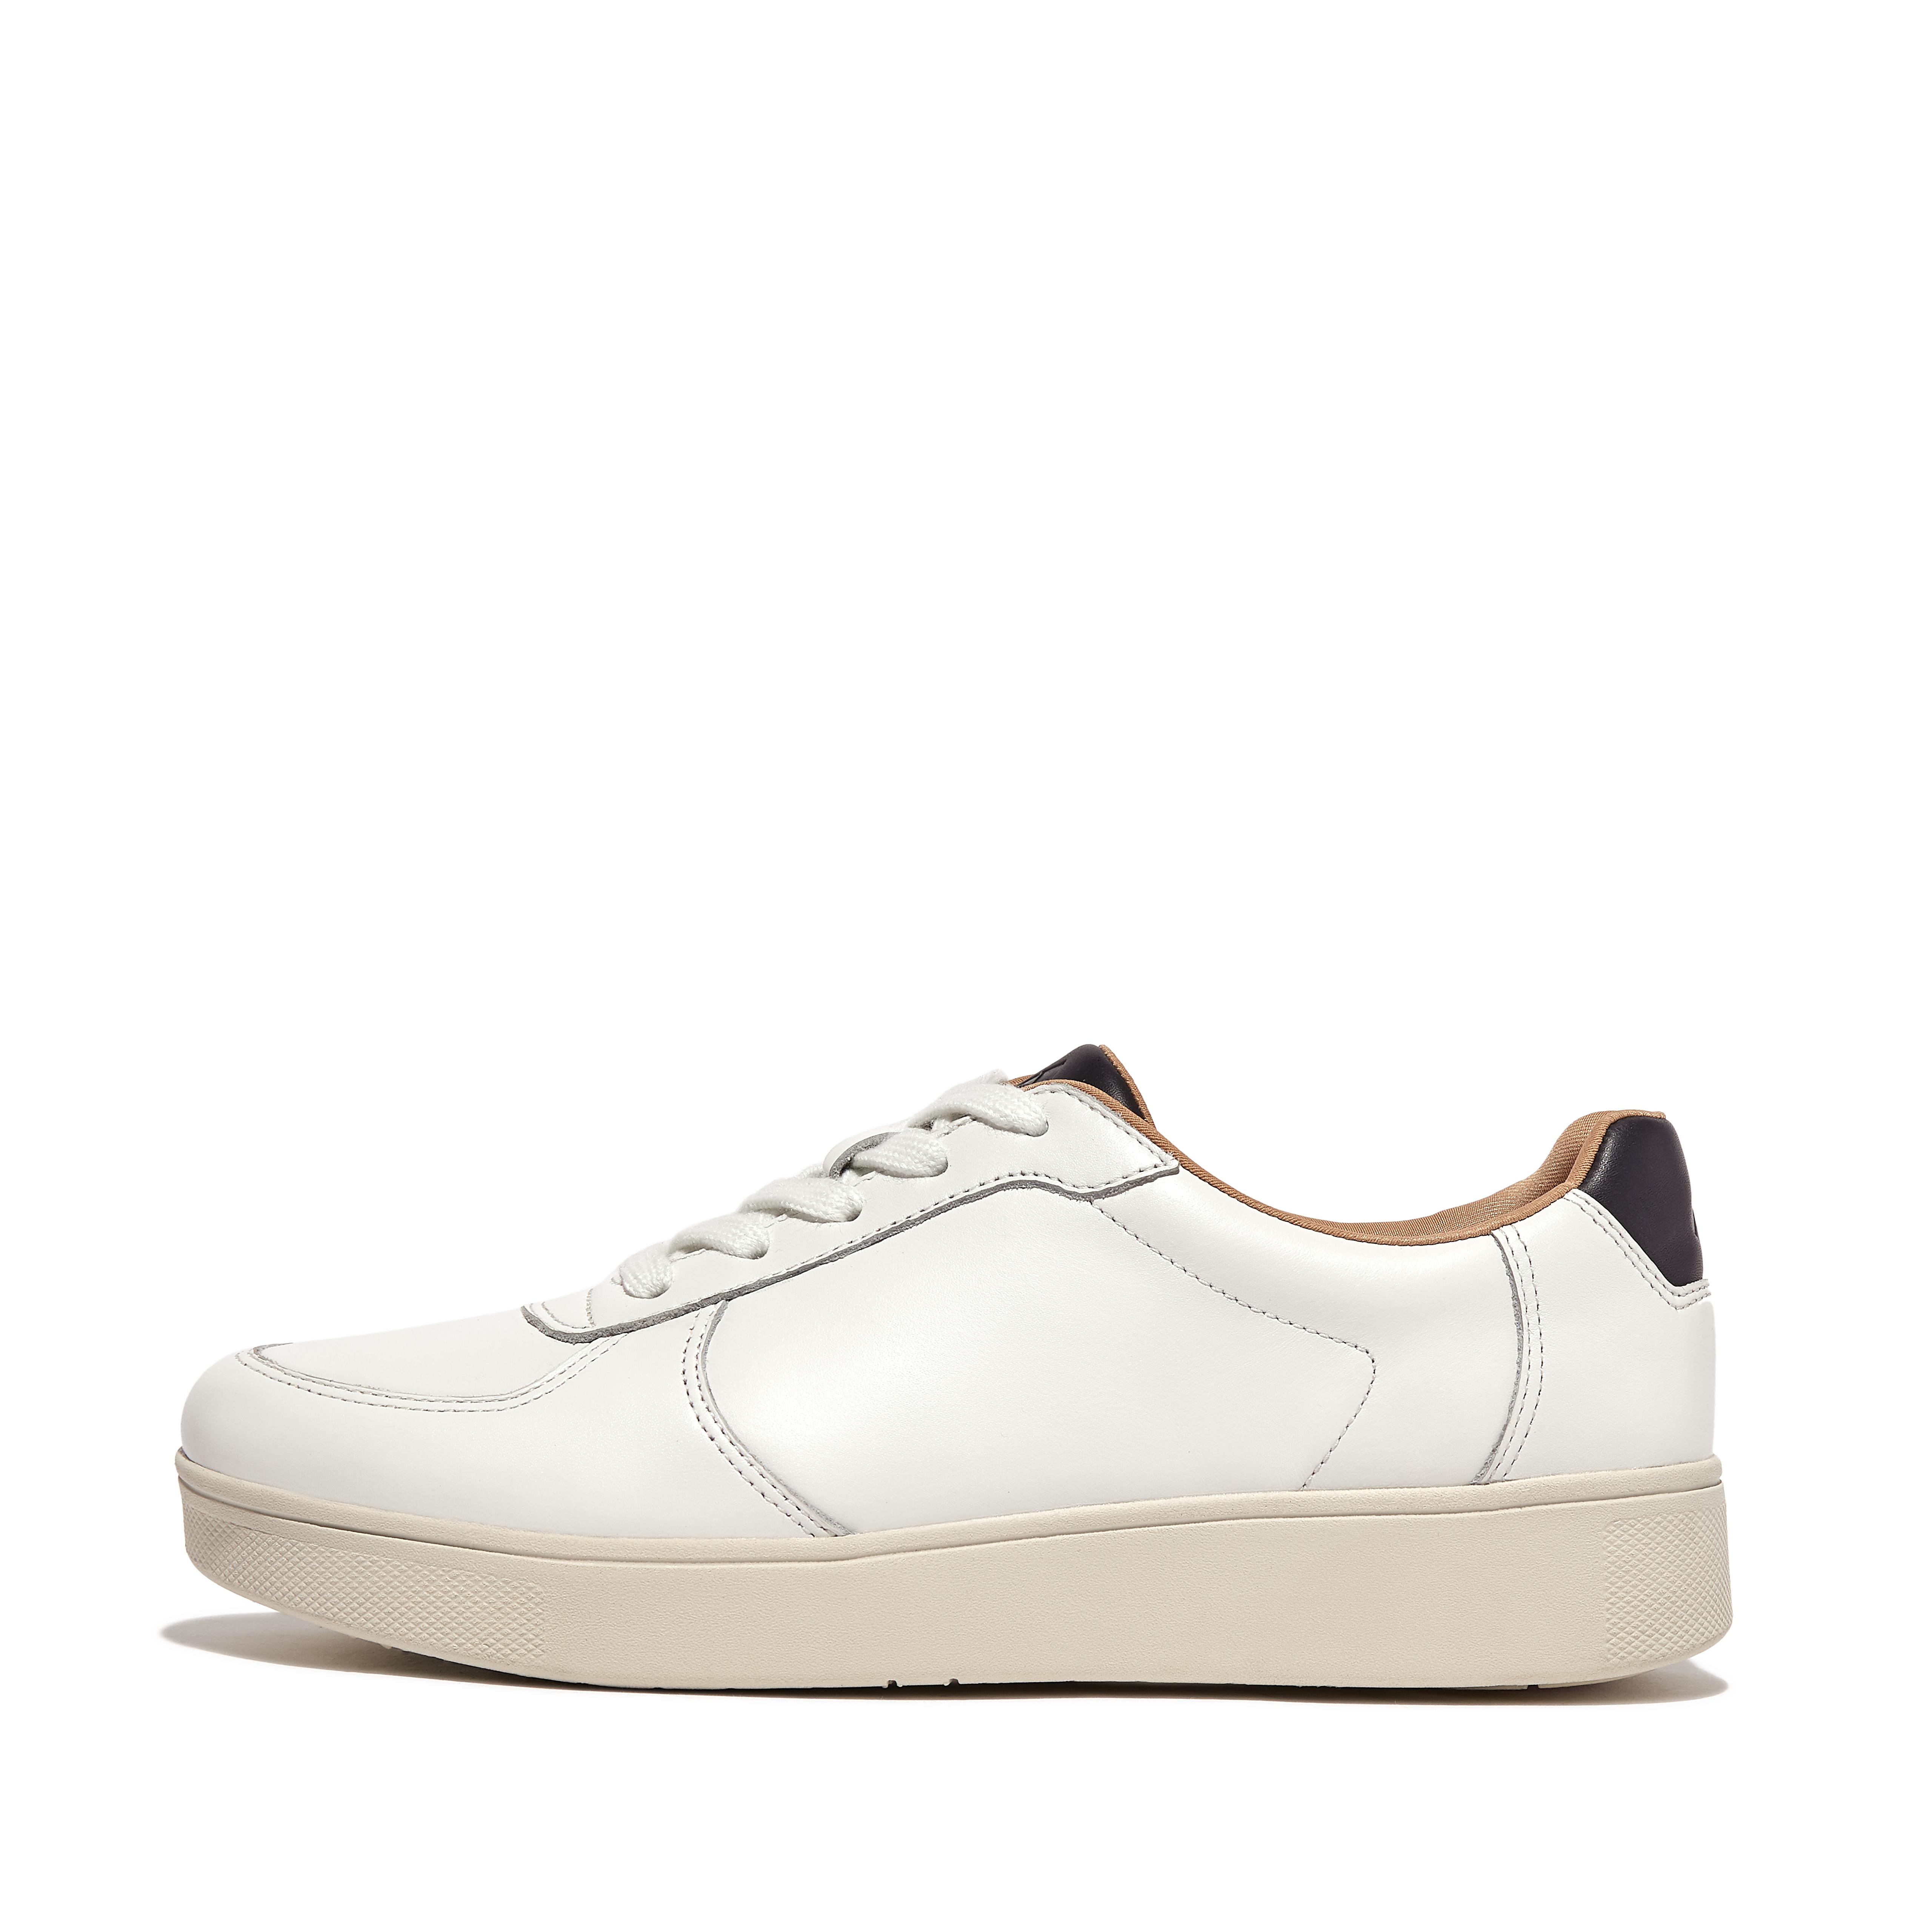 핏플랍 스니커즈 Fitflop Leather Panel Sneakers,White/Navy